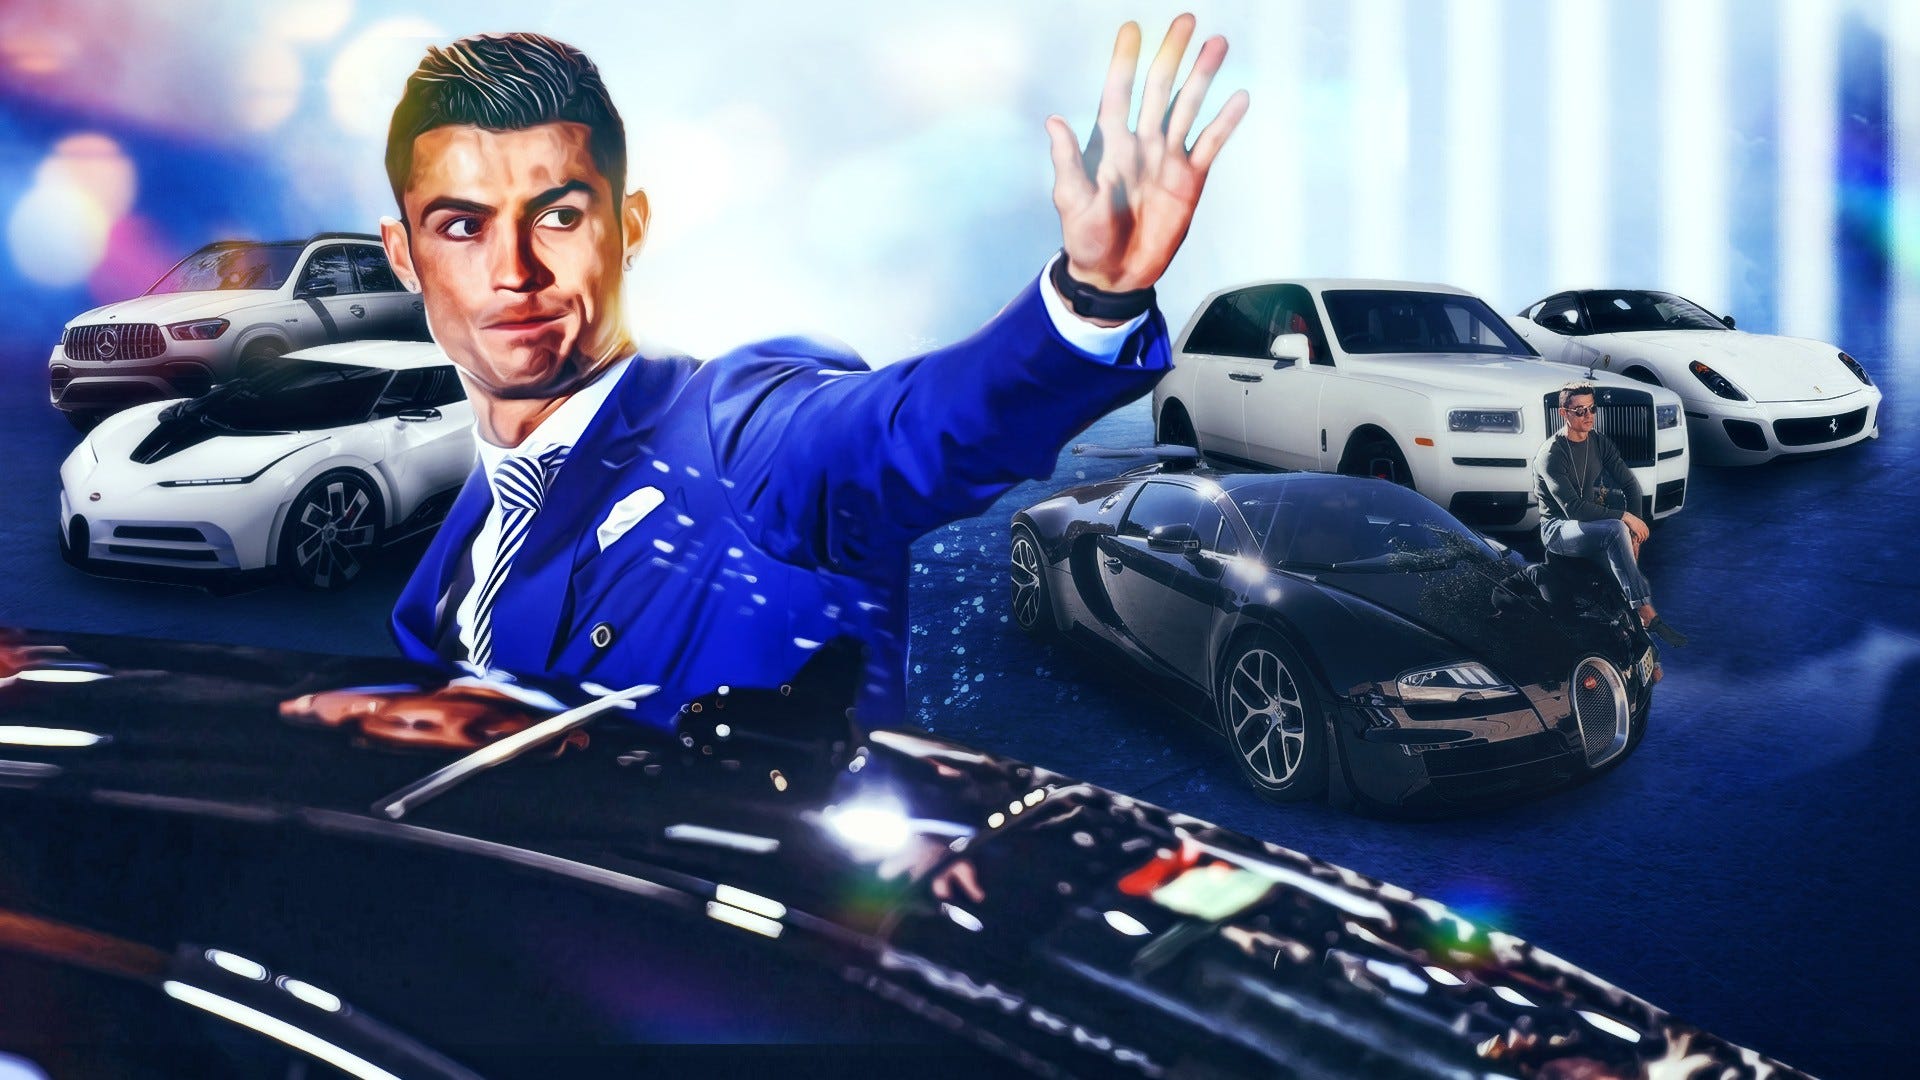 Choáng ngợp với bộ sưu tập xe khổng lồ của Cristiano Ronaldo